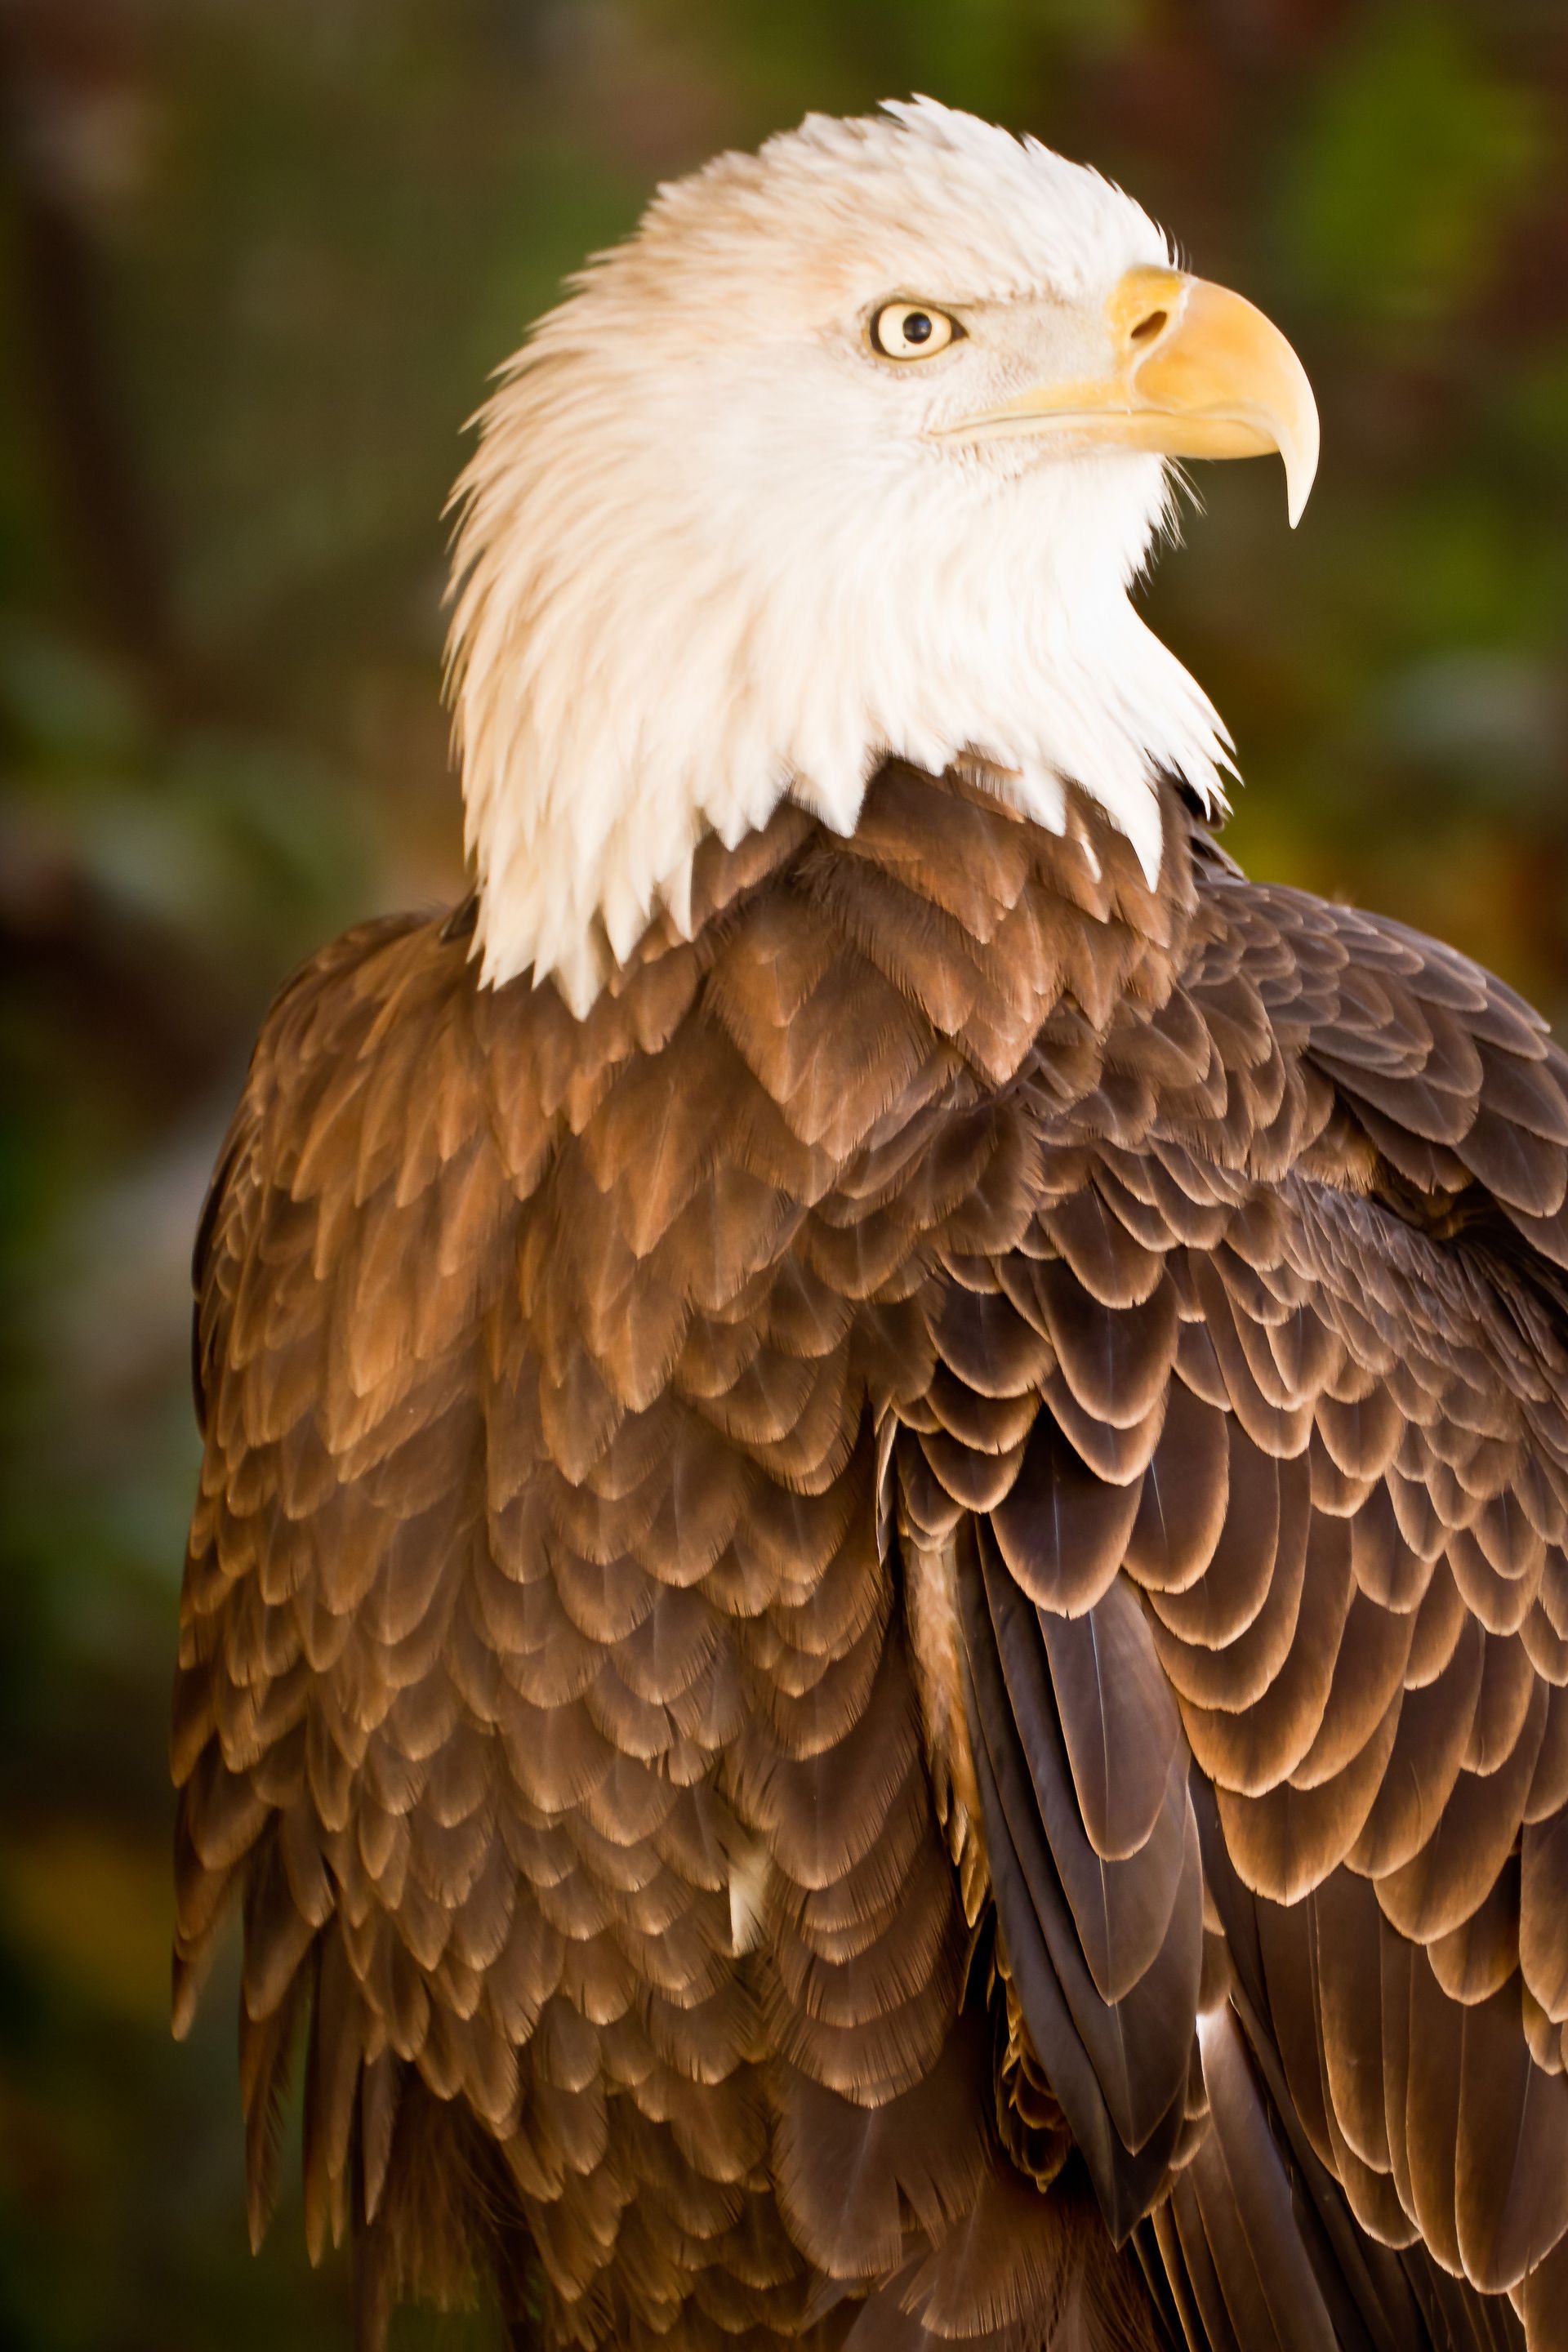 A portrait of a bald eagle.